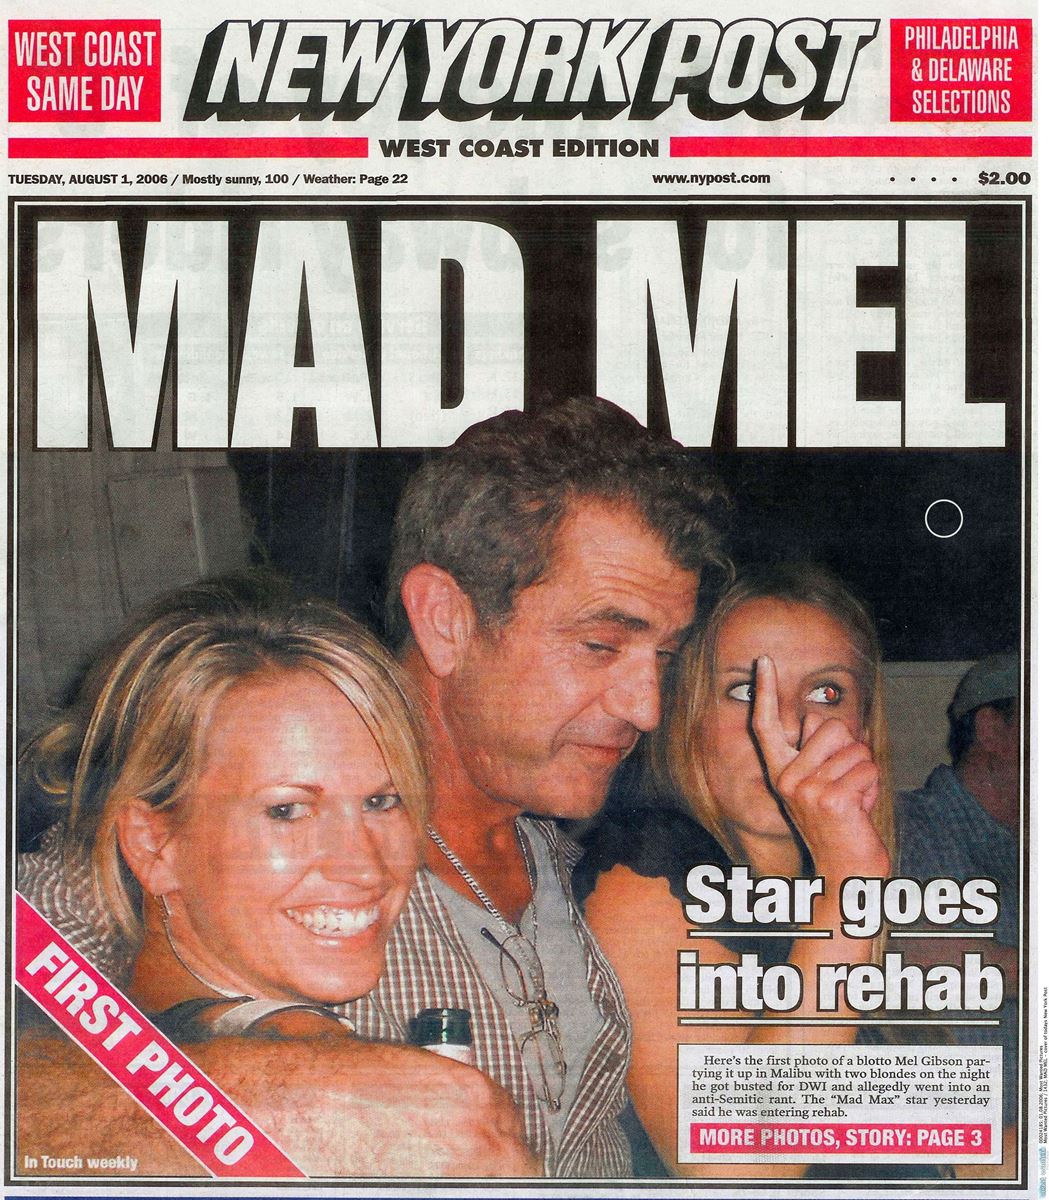 2006年に飲酒運転で逮捕されたときのニューヨークポスト紙。写真は逮捕数時間前の様子だそうで、酒瓶片手に美女を両脇に抱えた姿は、まさに“マッド・メル”。